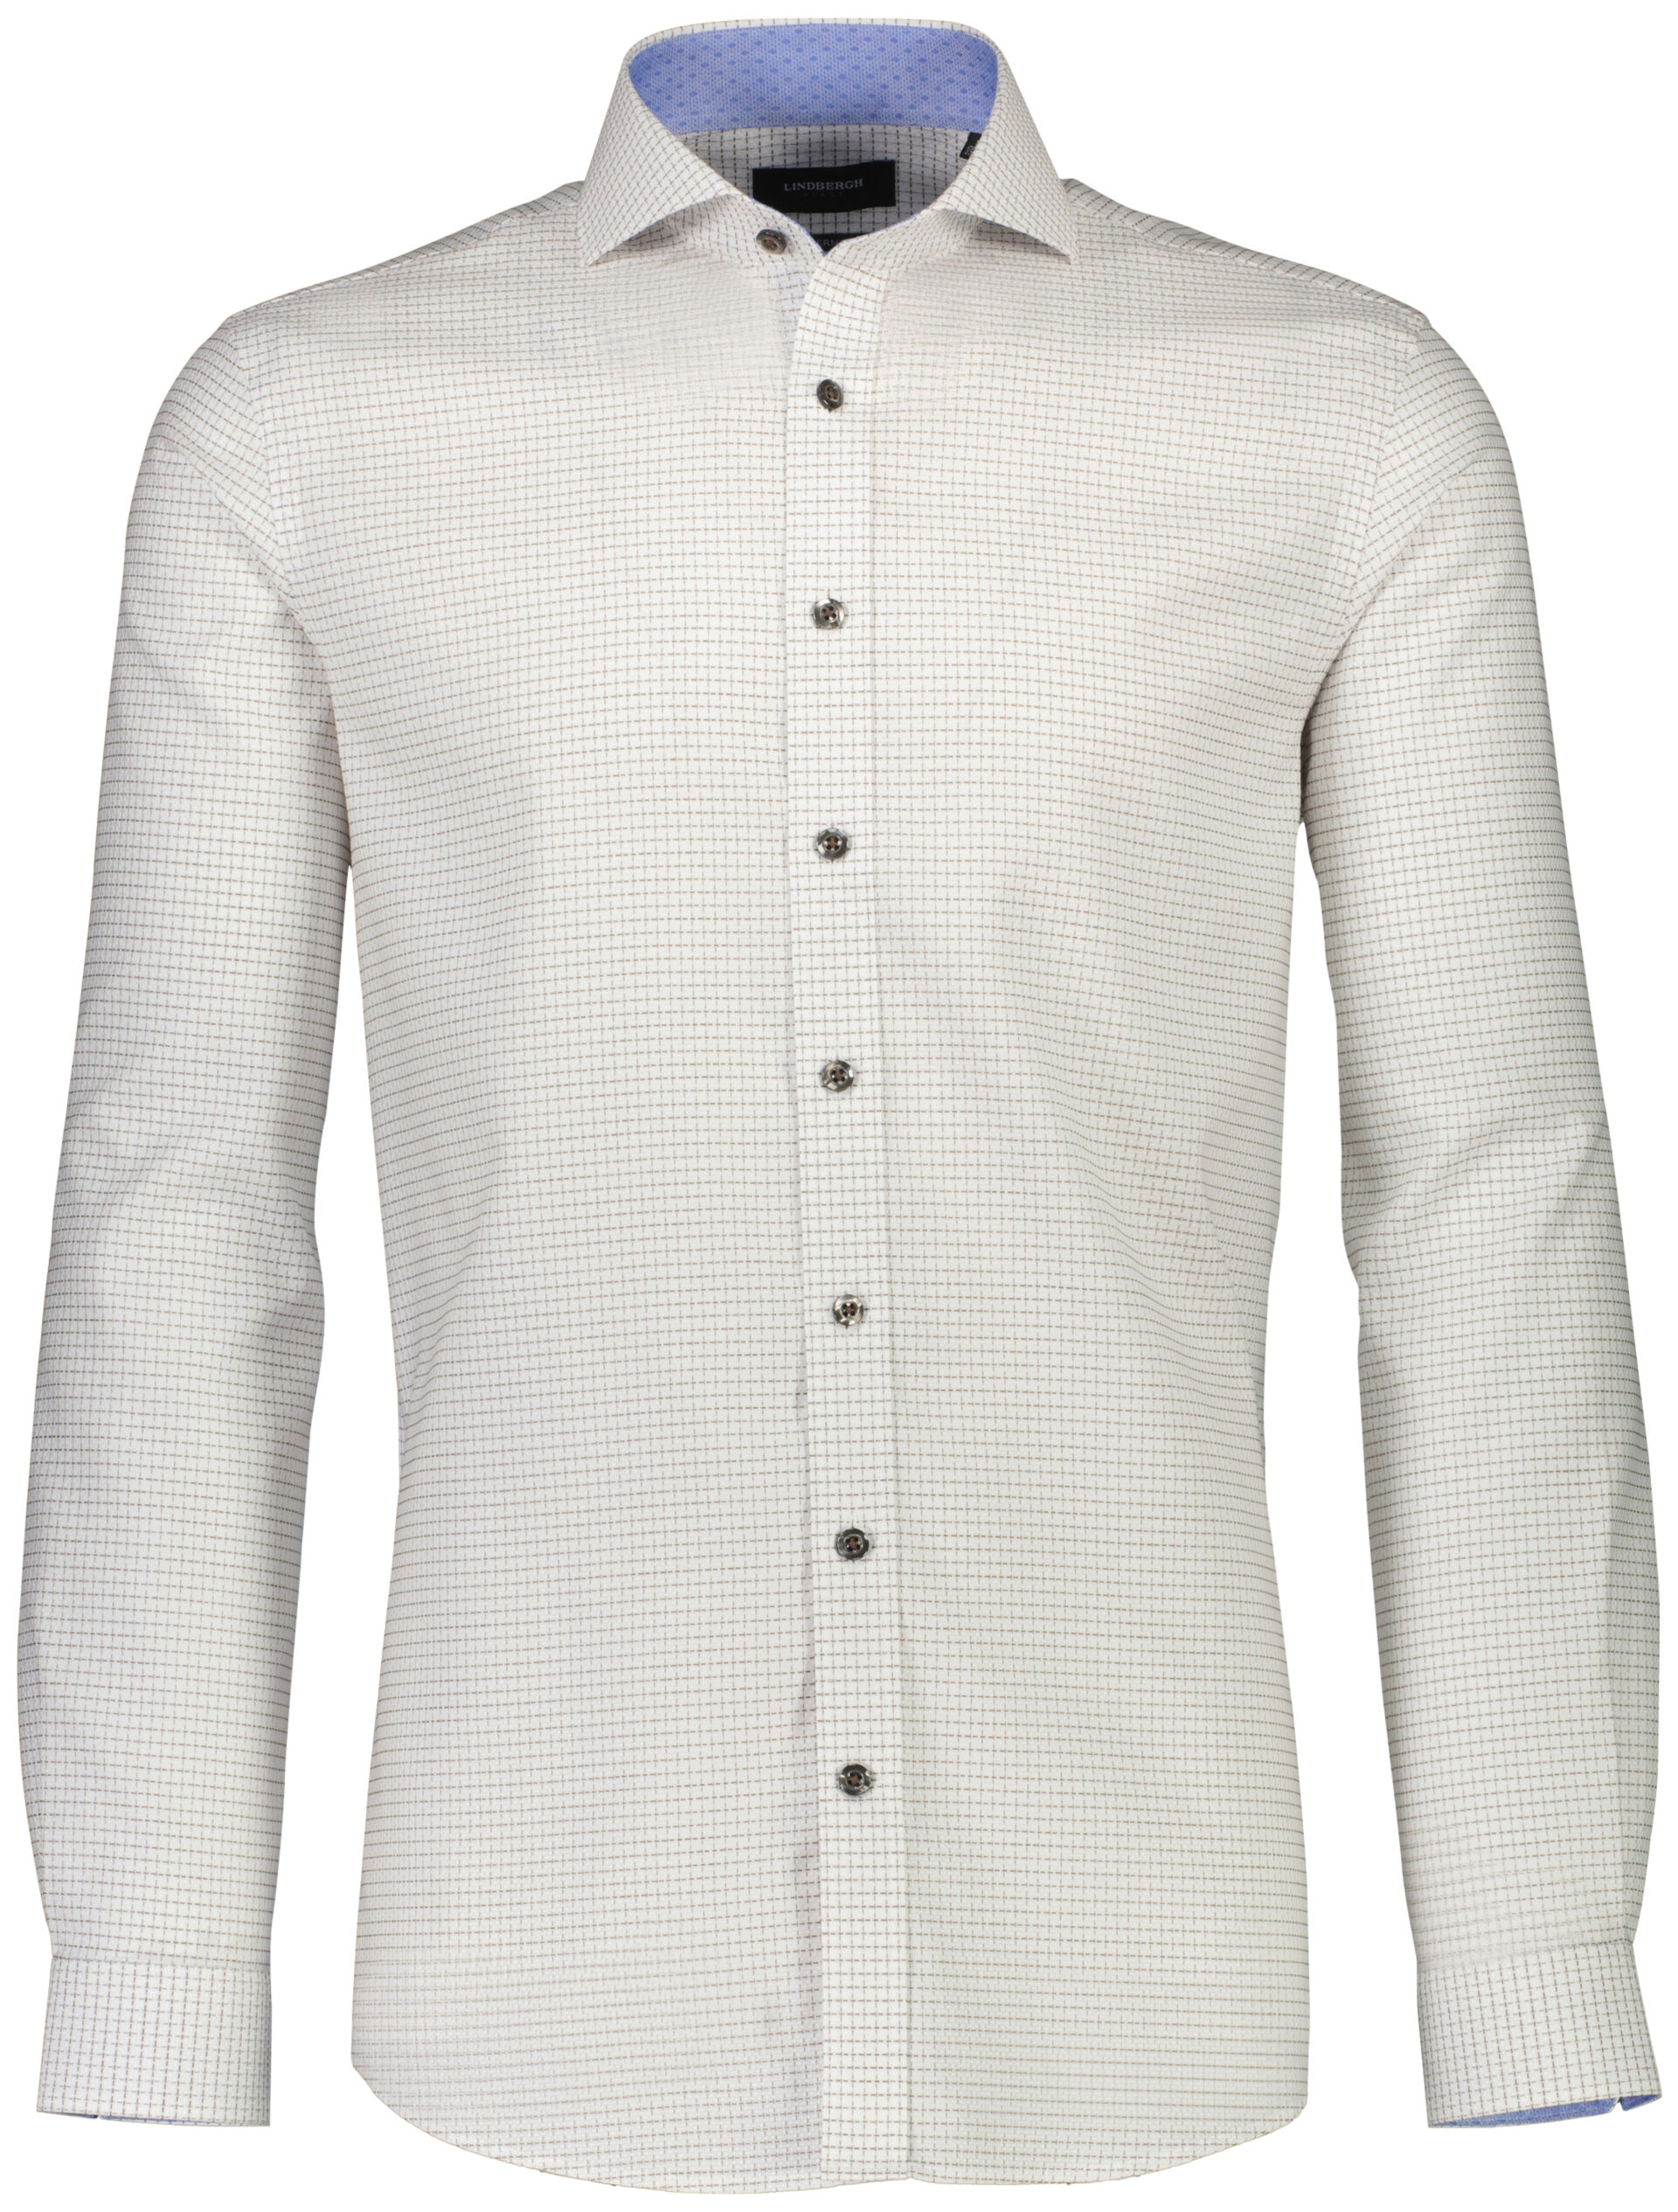 Business casual shirt Business casual shirt White 30-241024